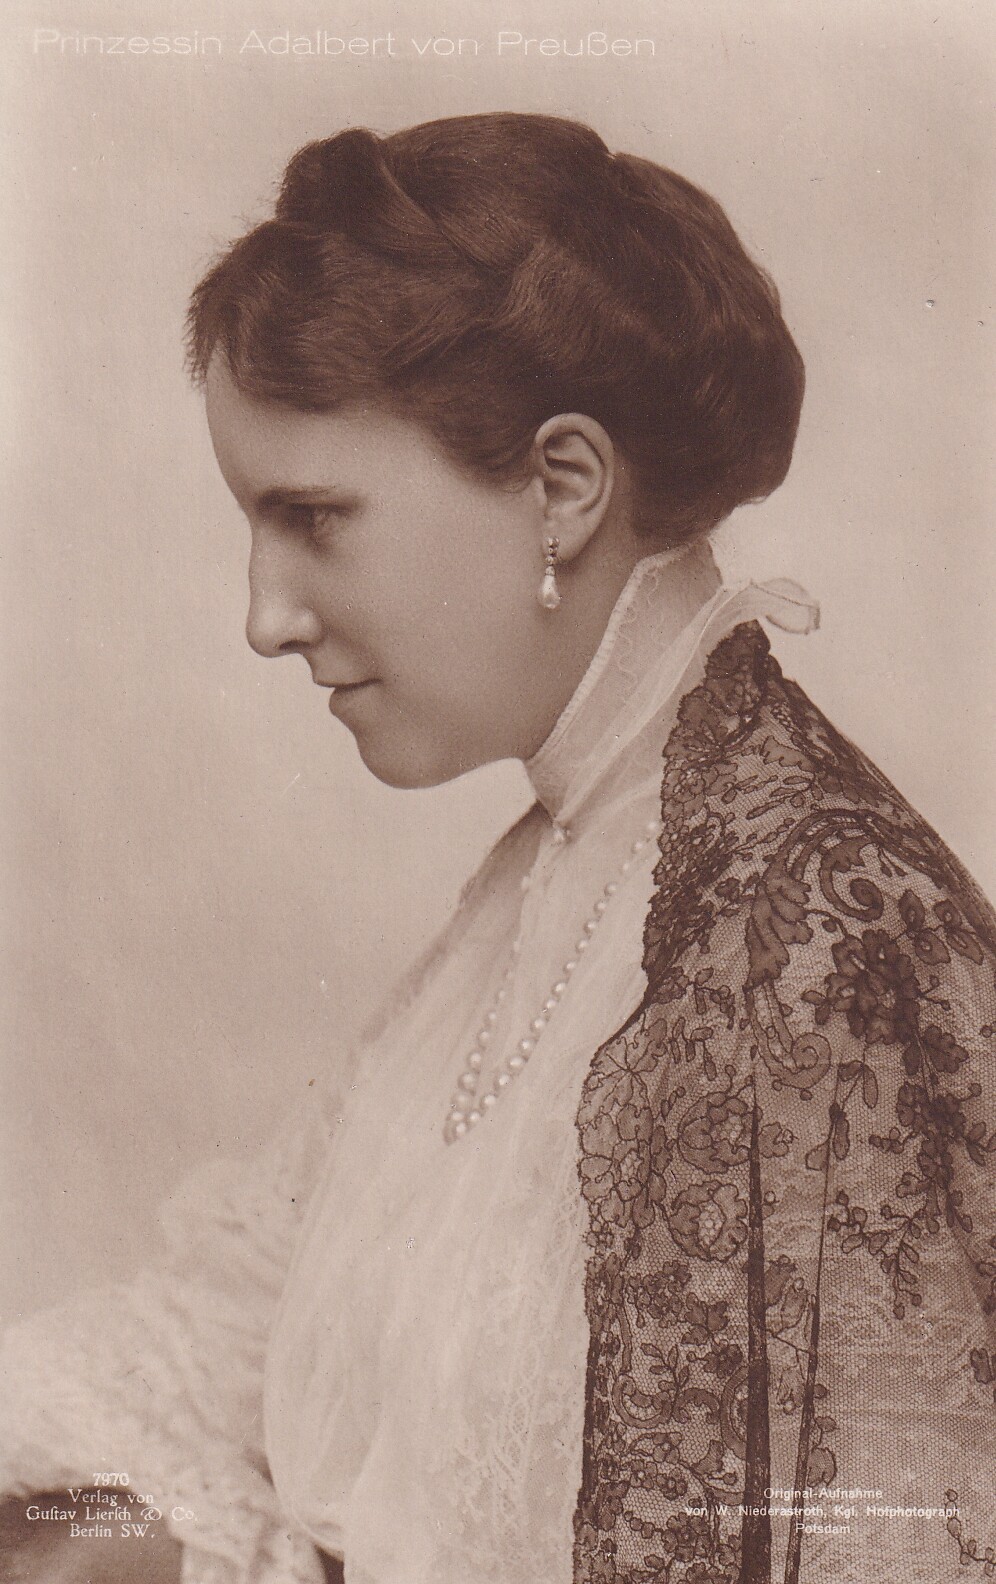 Bildpostkarte mit Foto der Prinzessin Adelheid von Preußen, 1918 (Schloß Wernigerode GmbH RR-F)